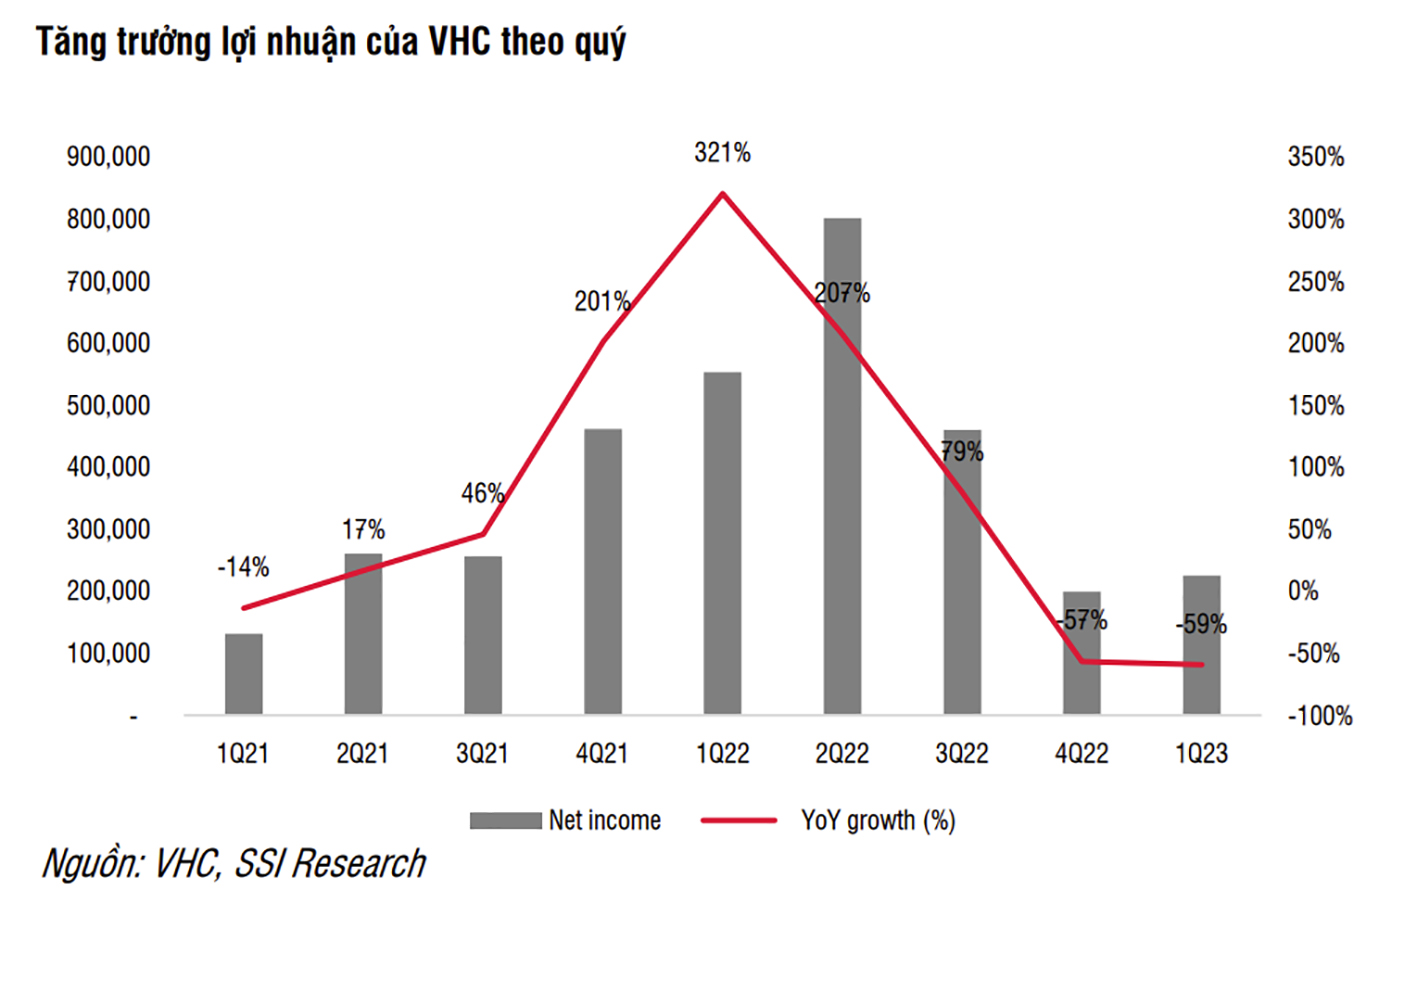  Lợi nhuận của VHC giảm dần trong các quý gần đây, nhưng dự báo sẽ phục hồi trở lại trong các quý sắp tới.